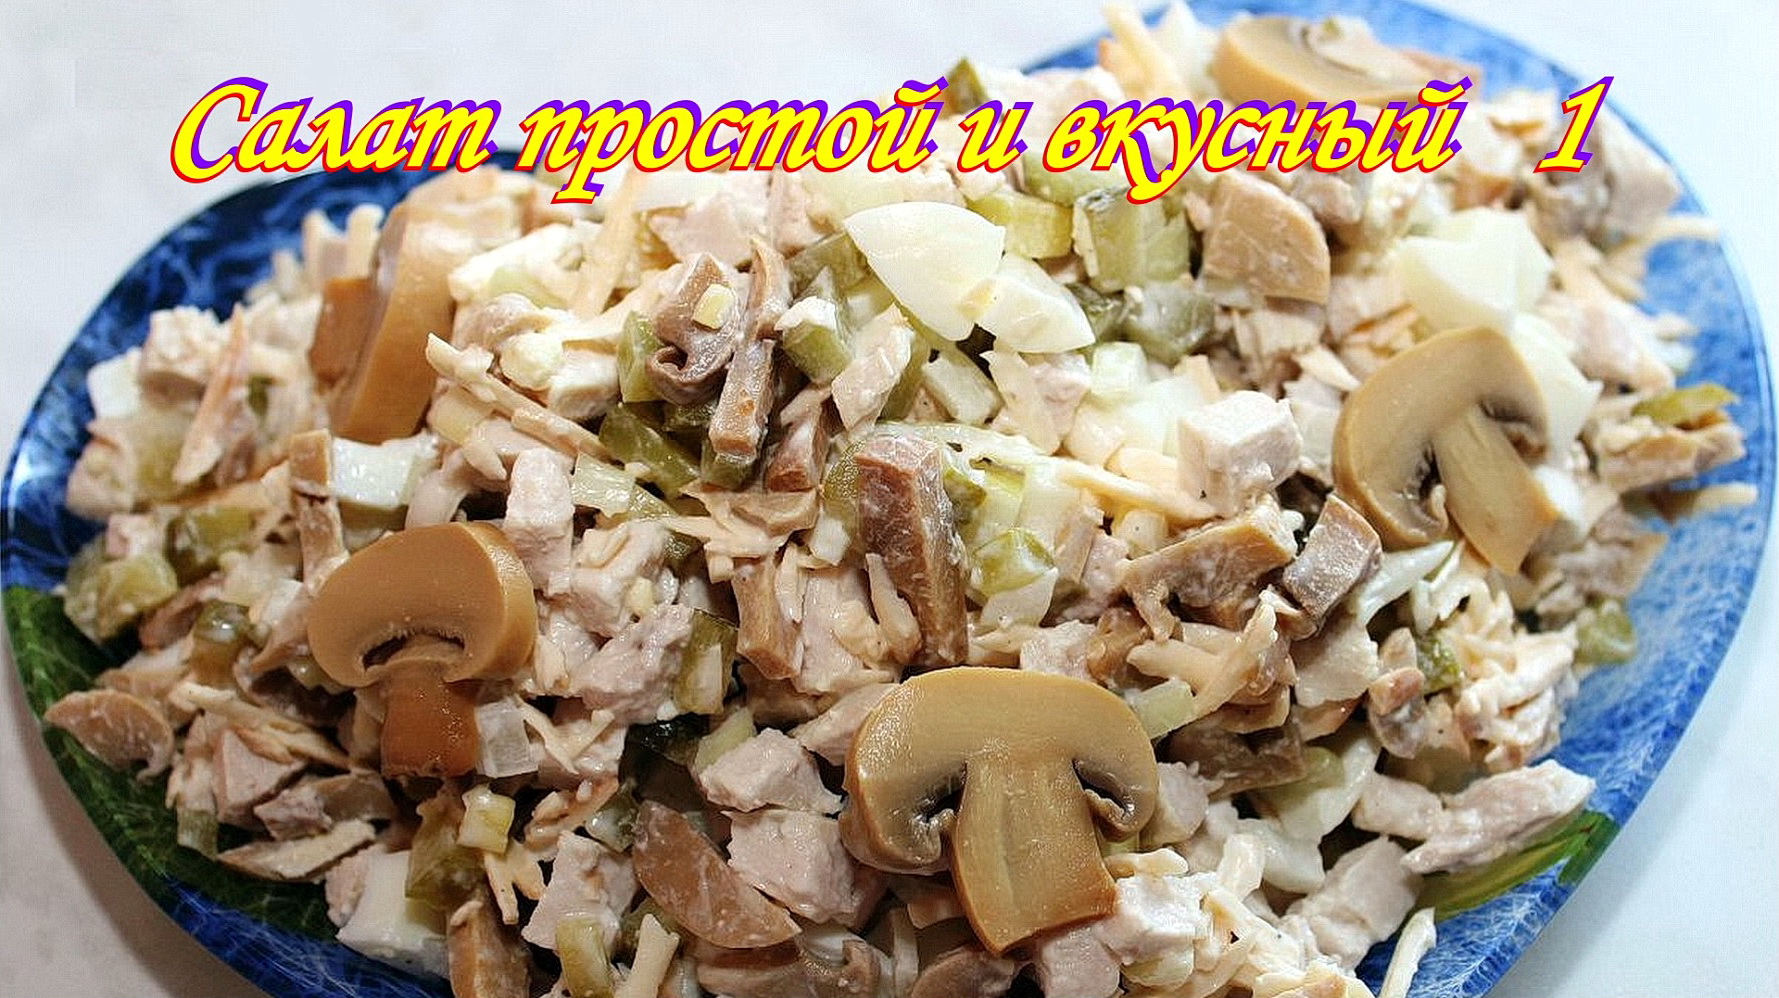 Салат с маринованными грибами и кукурузой. Салат простой и вкусный 1.